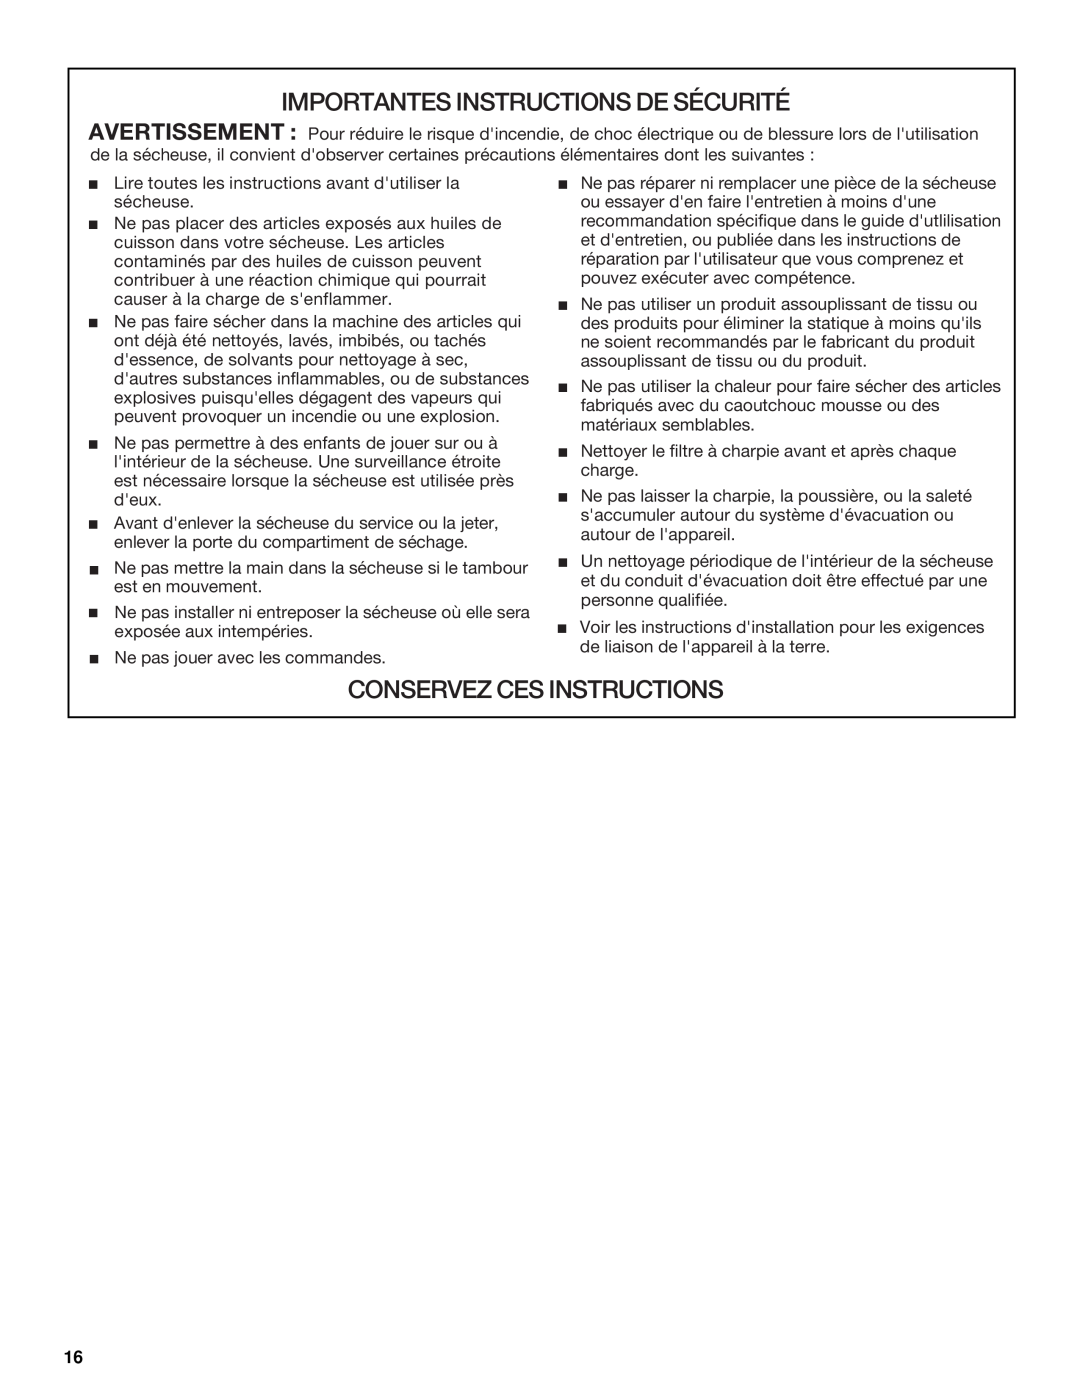 Whirlpool 8529302 manual Importantes Instructions De Sécurité, Conservez Ces Instructions 